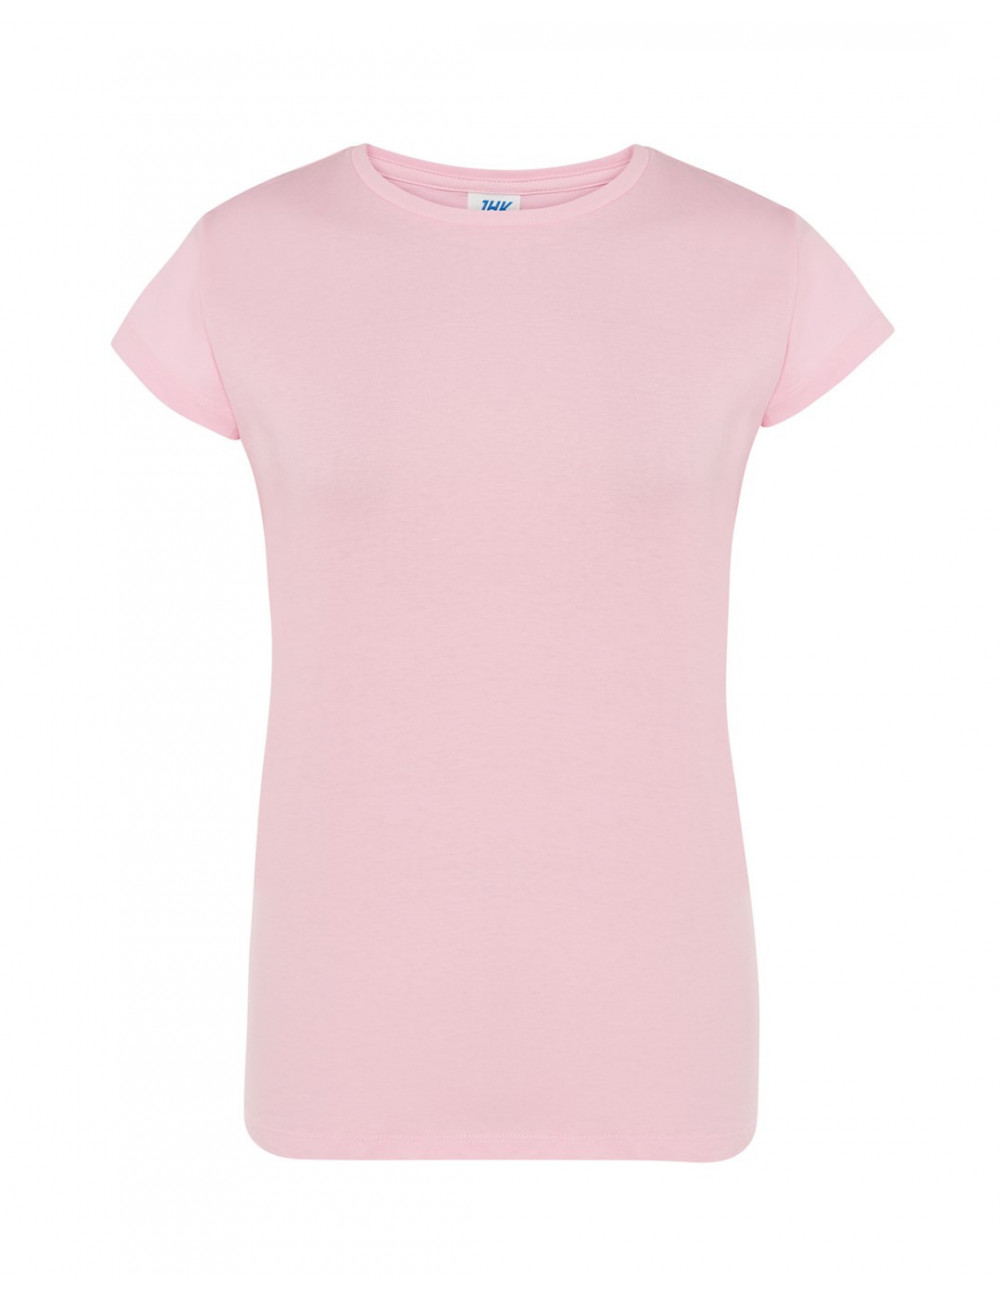 Koszulka damska tsrl cmf lady comfort różowy Jhk